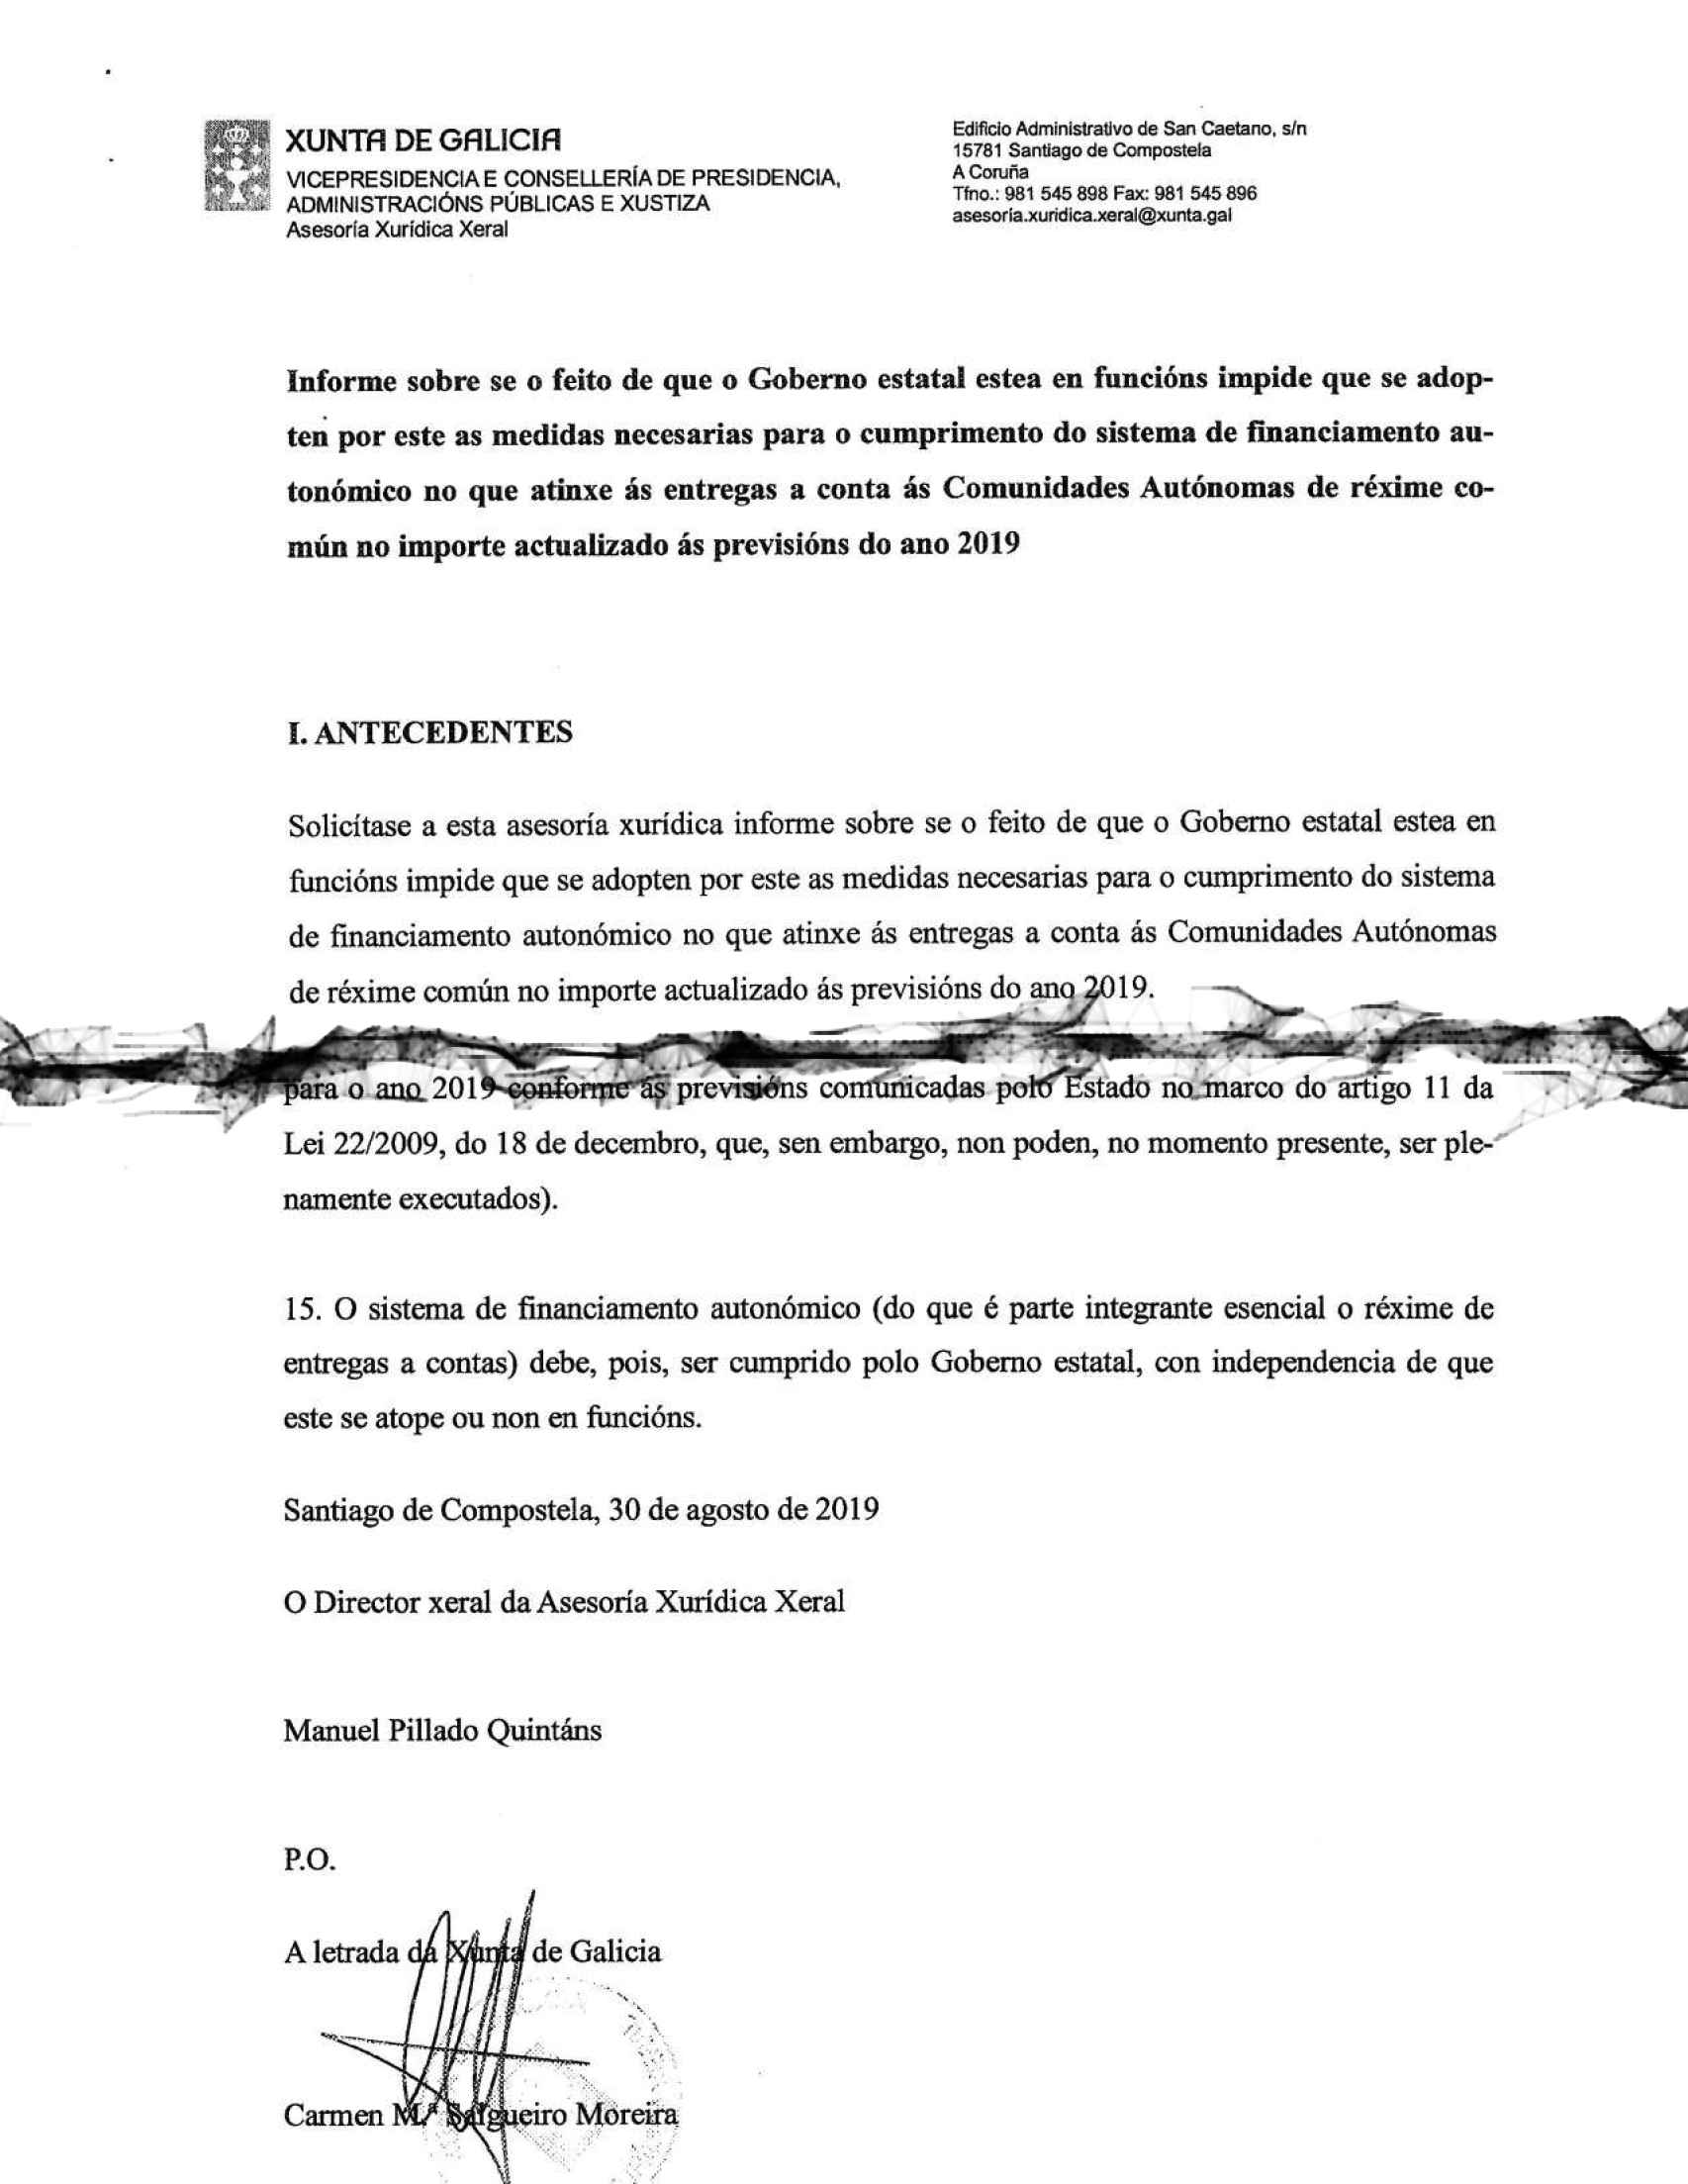 Detalles de la primera y última páginas del Informe de la Xunta.